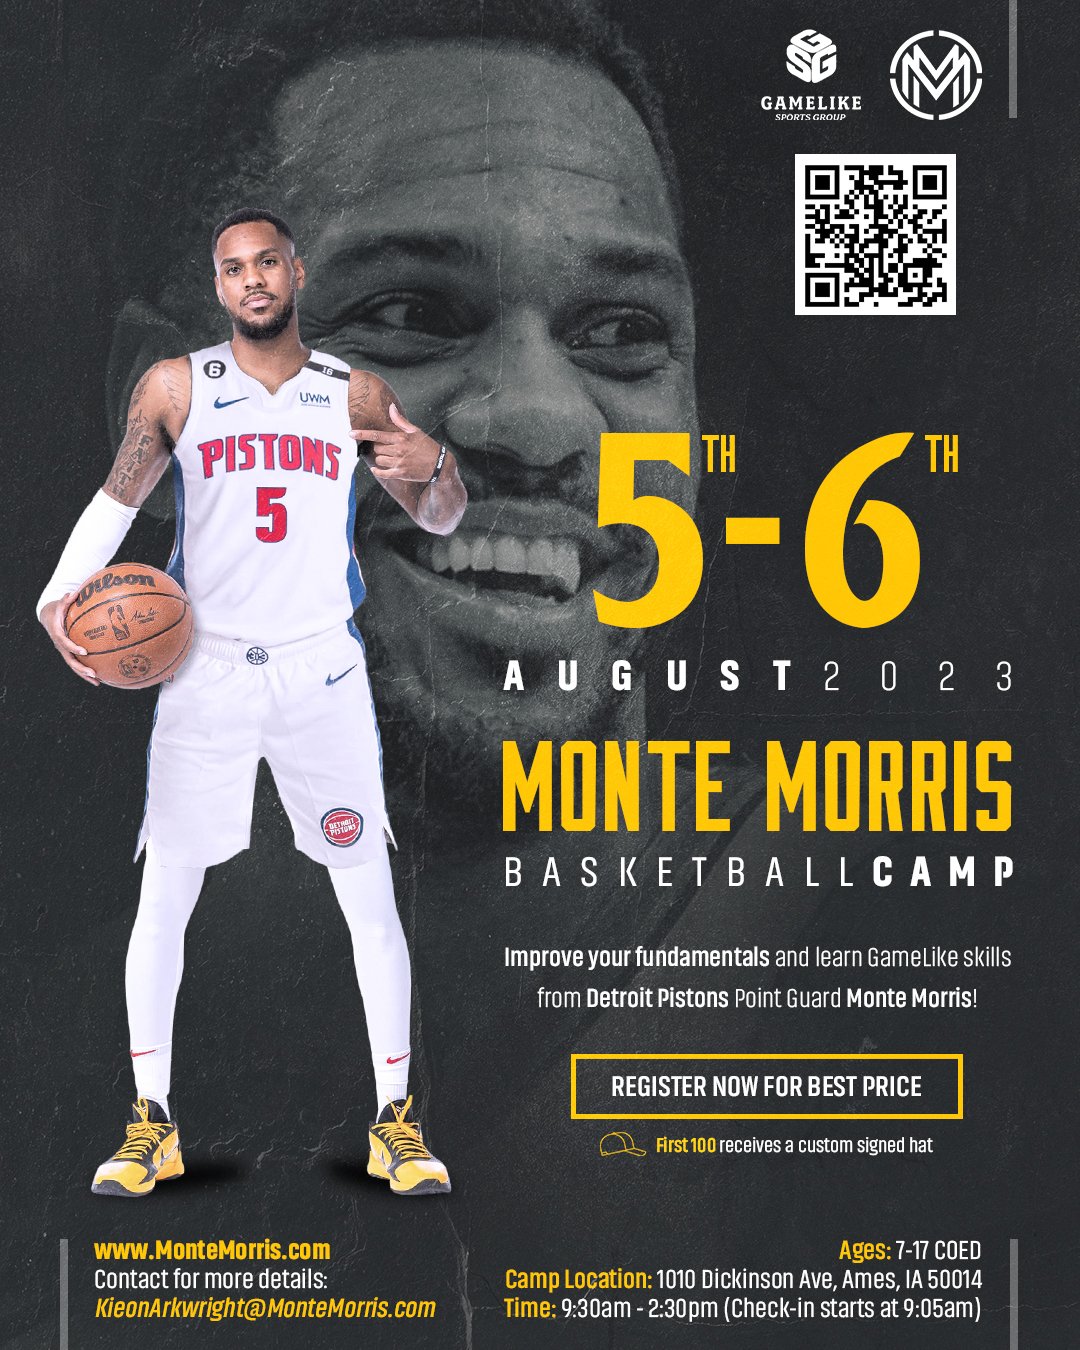 Monte Morris, Detroit Pistons